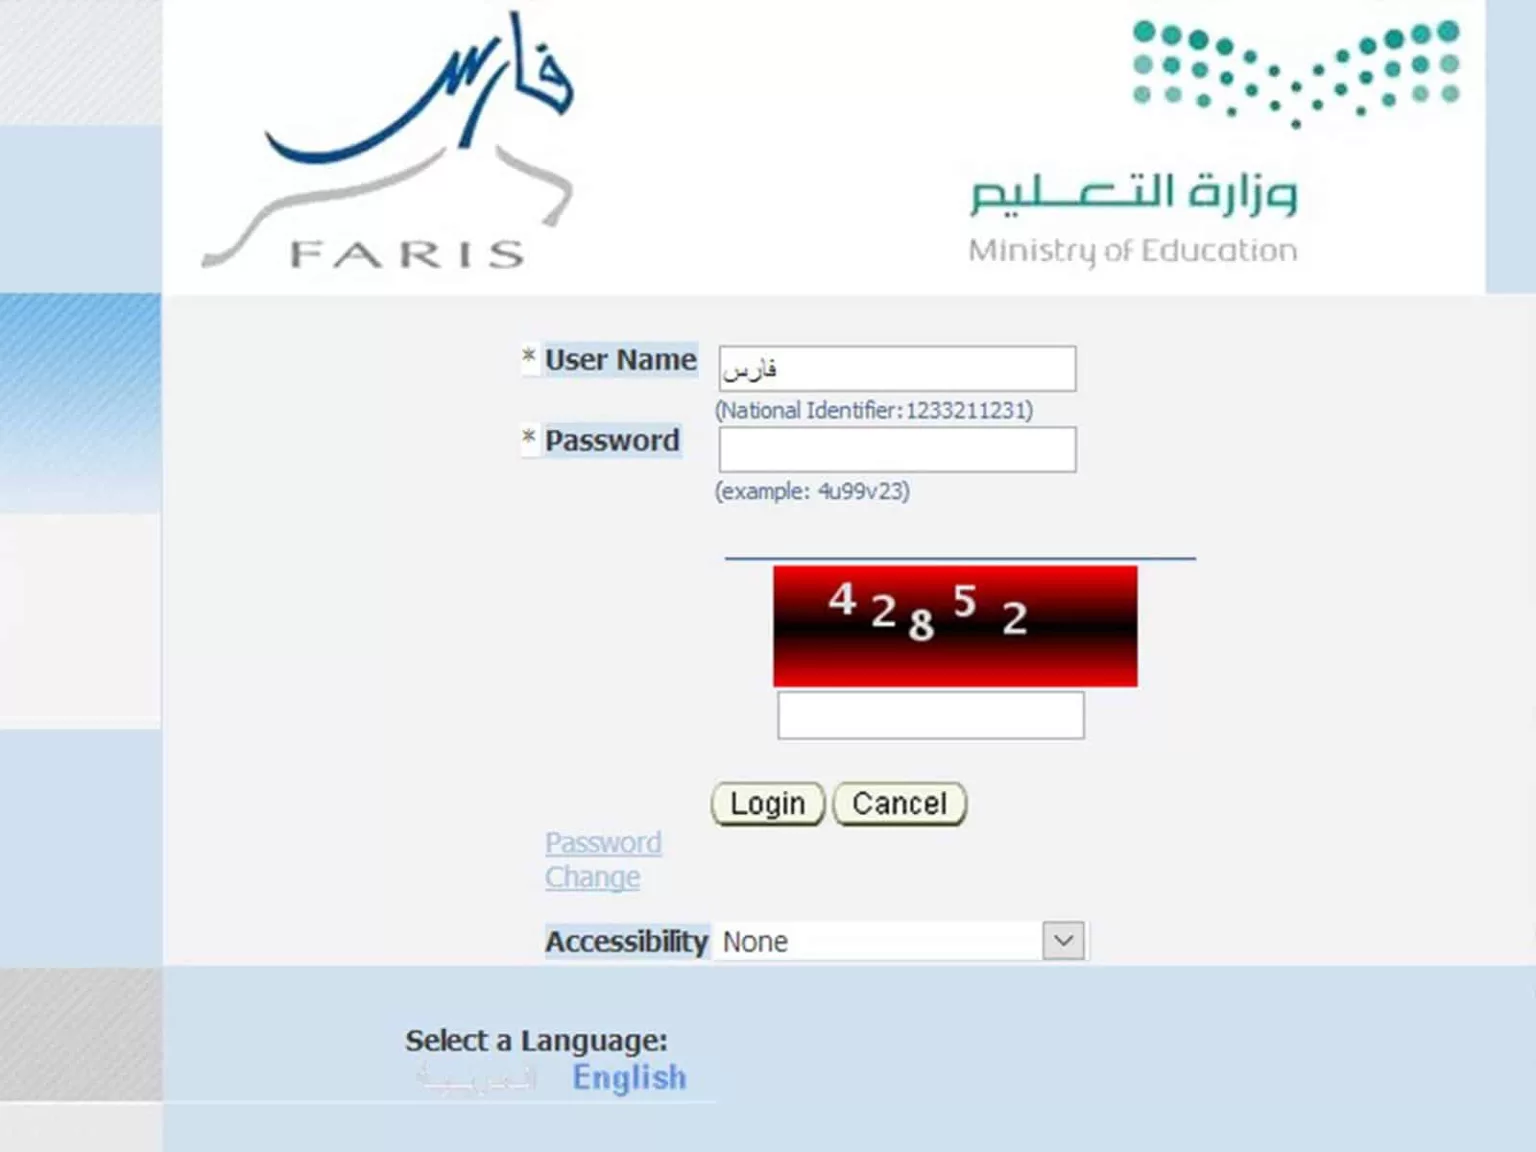 نظام فارس الخدمه الذاتيه - مدونة التقنية العربية